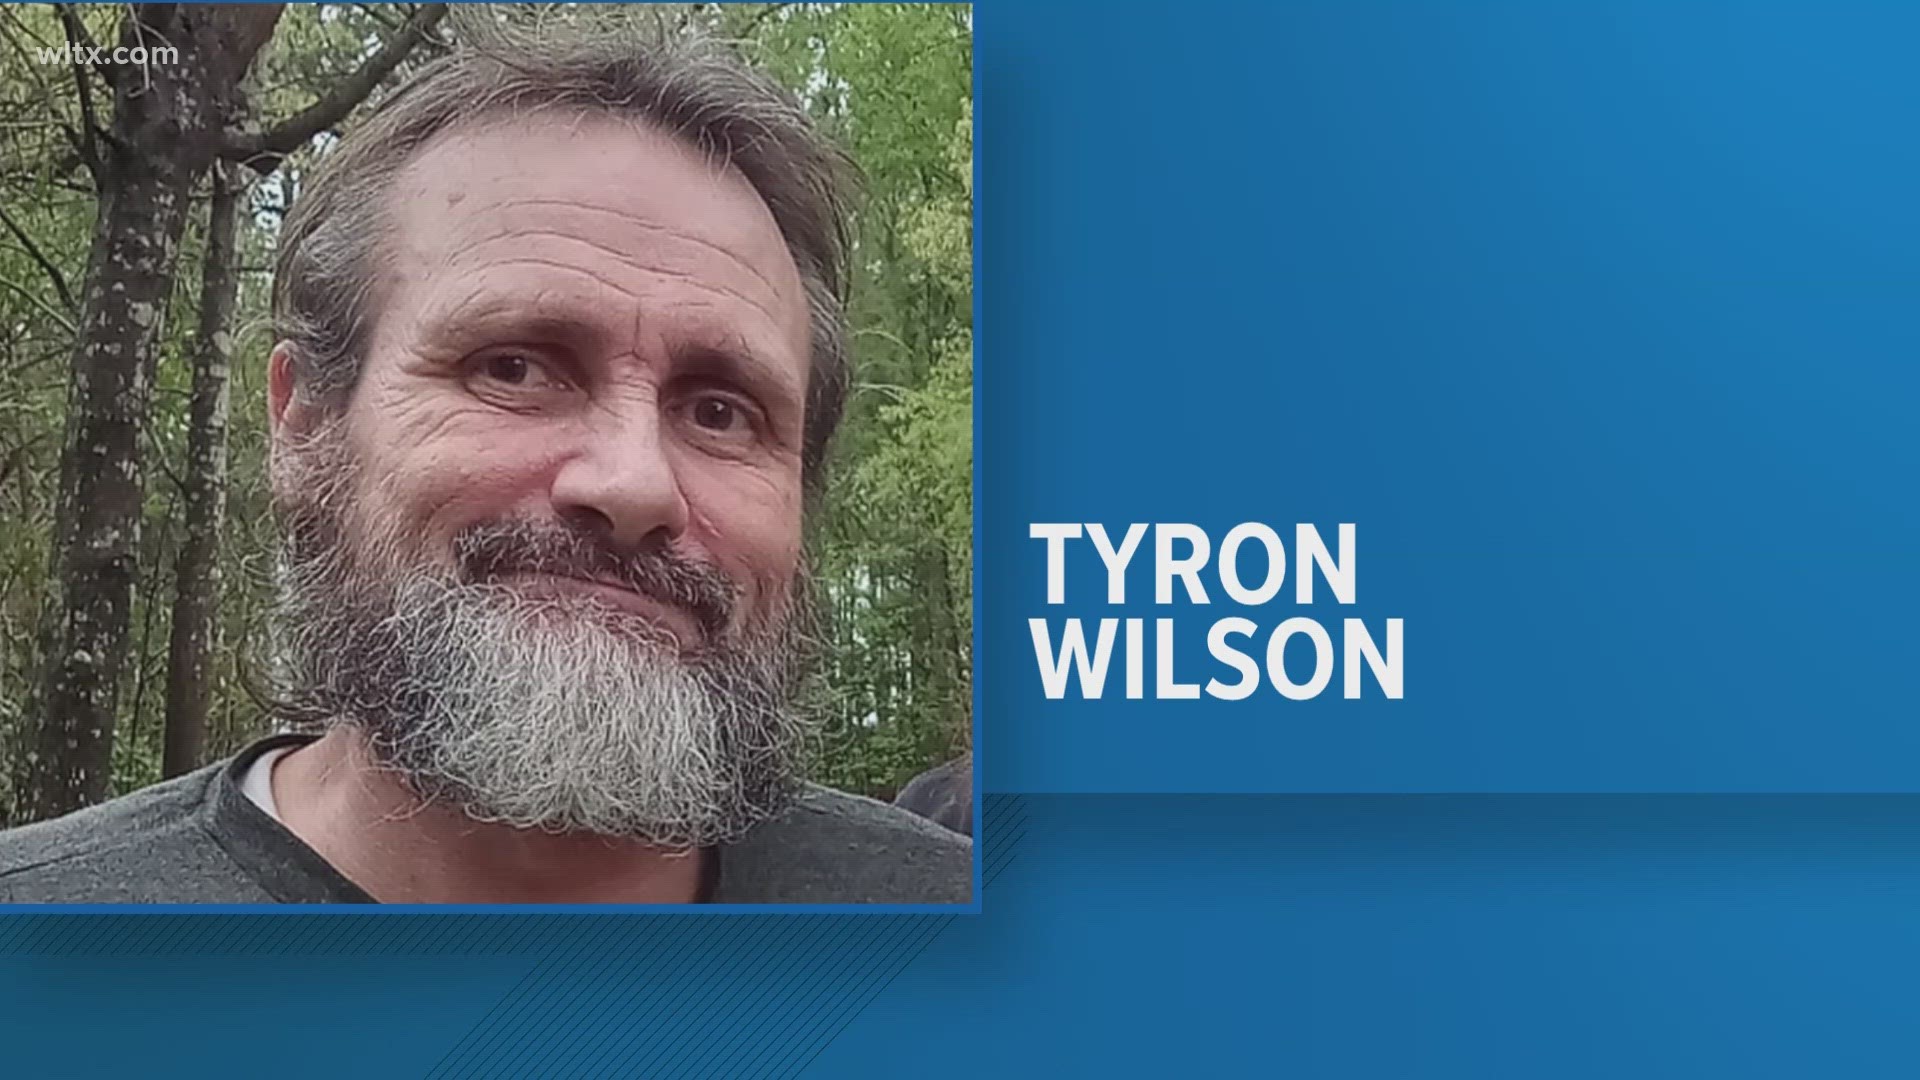 Tyron Wilson he was last seen in Lexington on April 7.